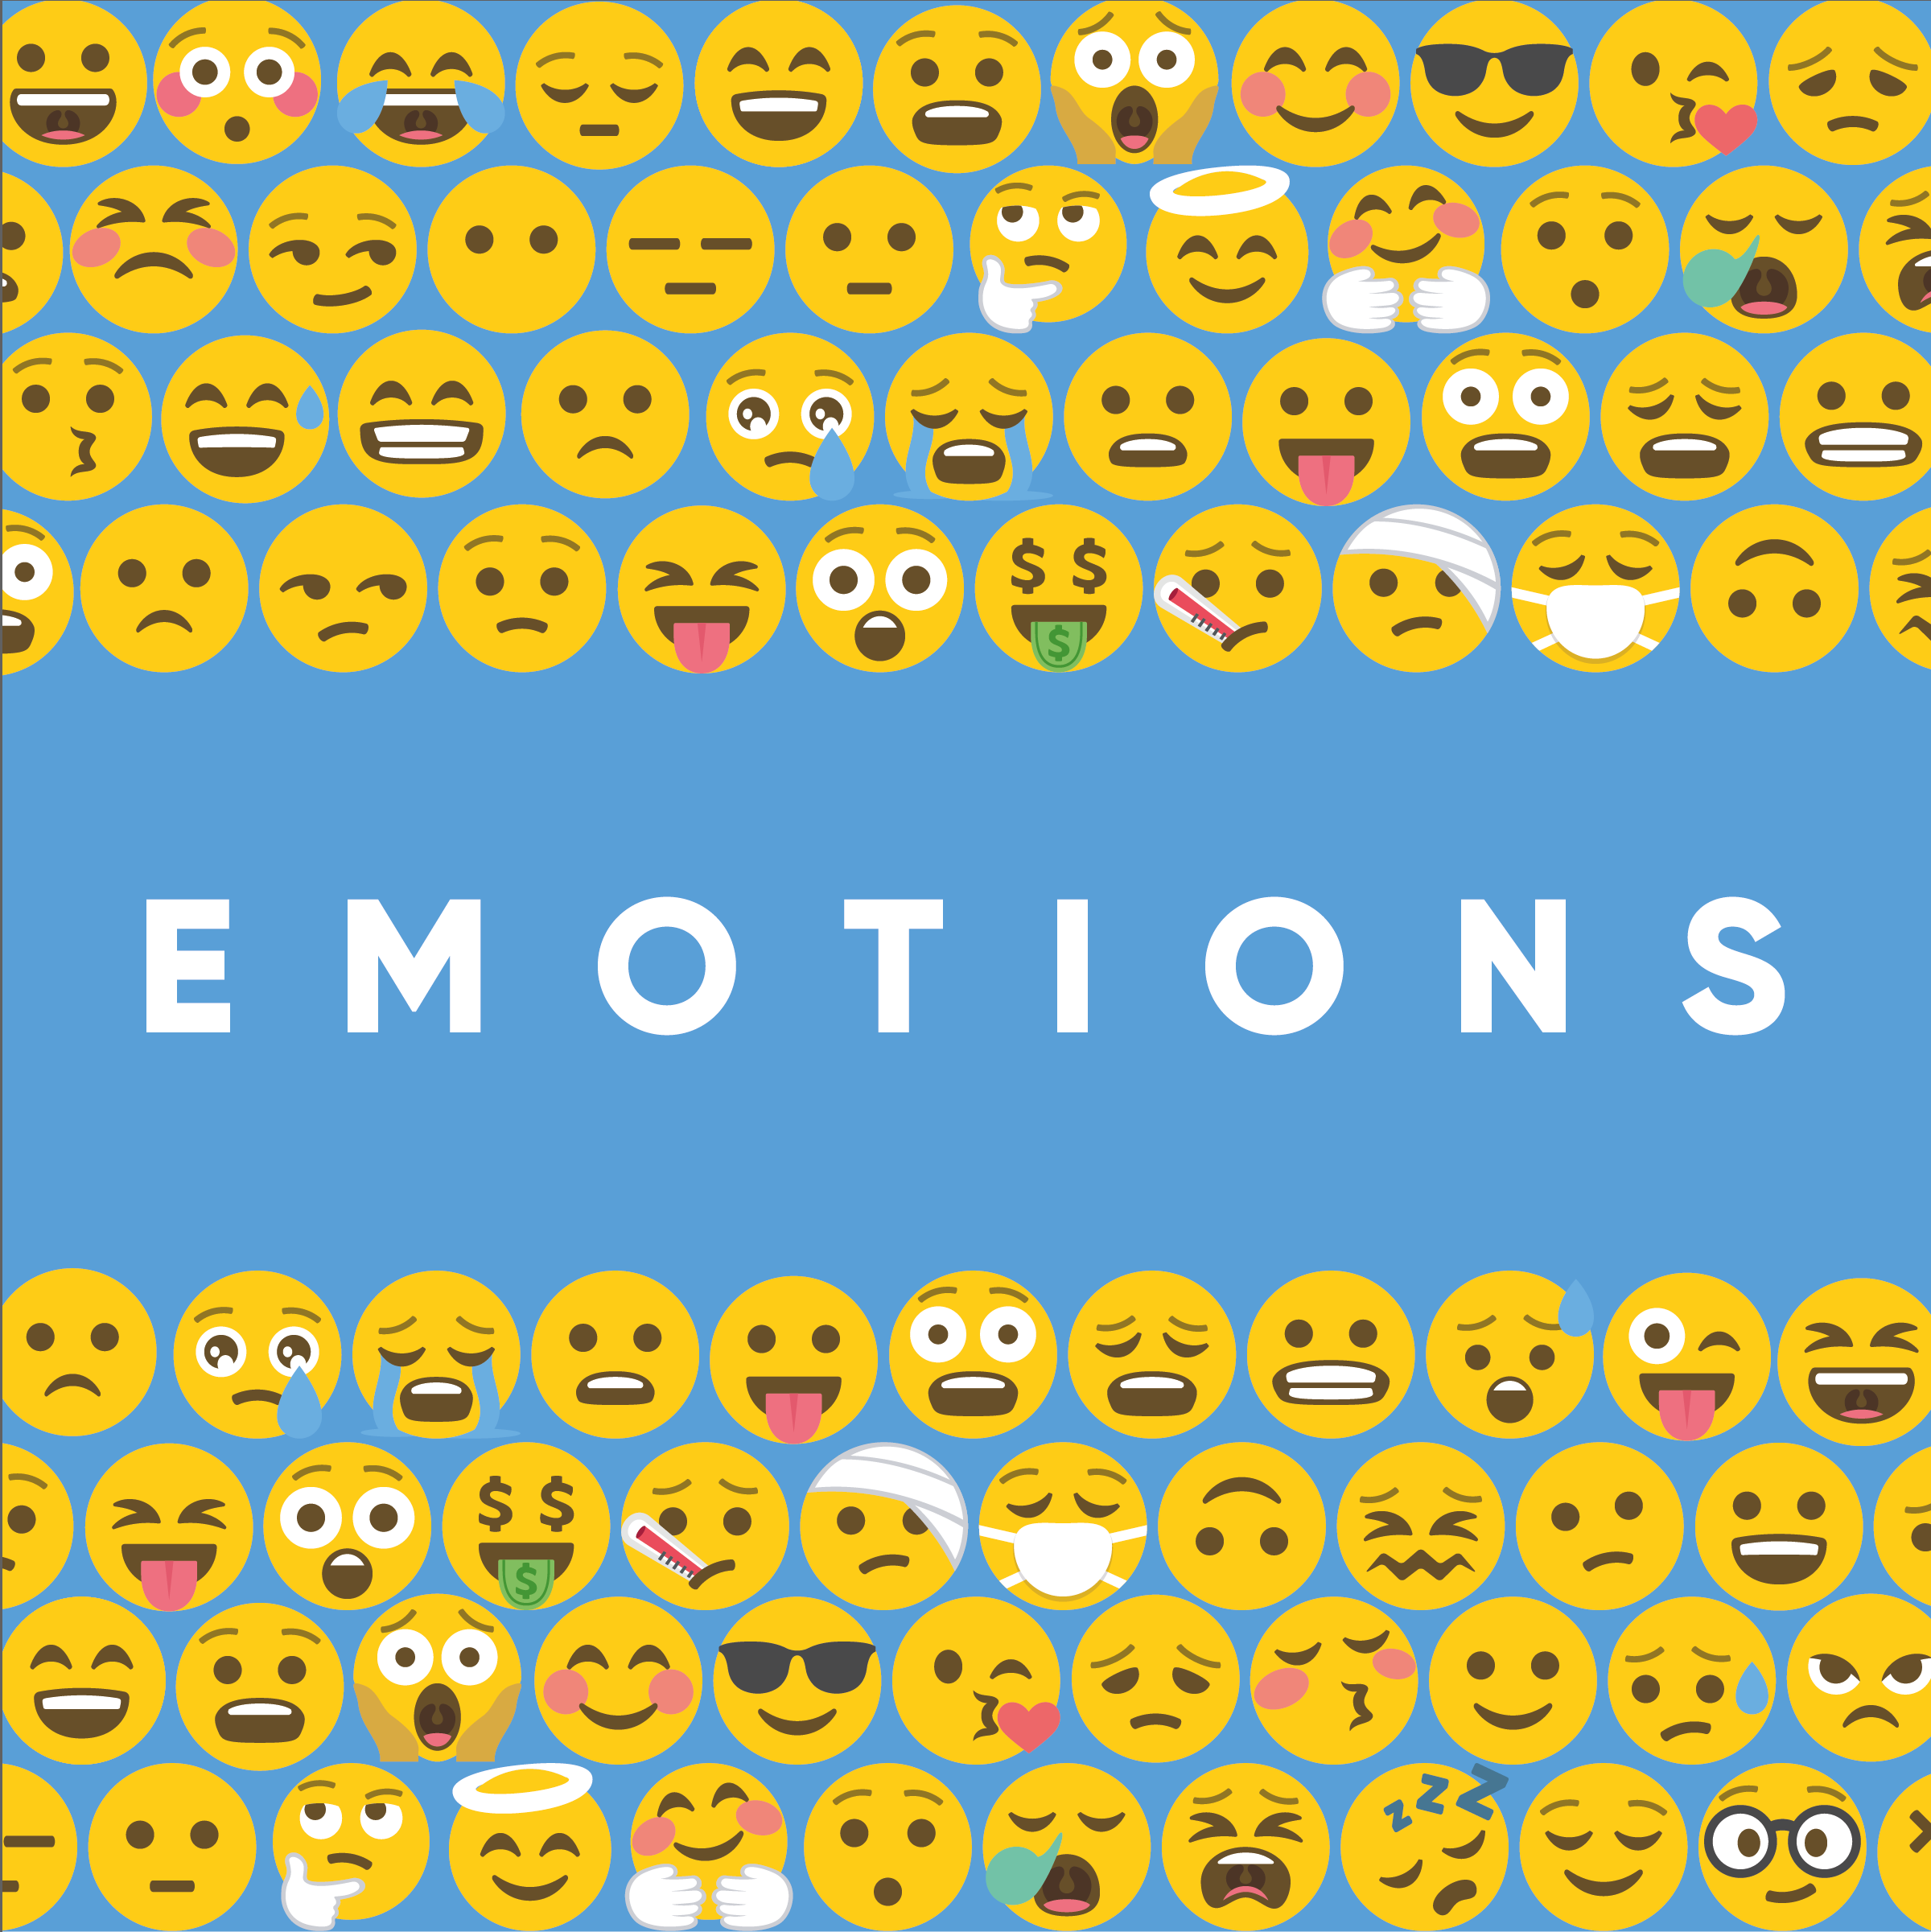 Emotions // Q & A // John & Joni Clarke